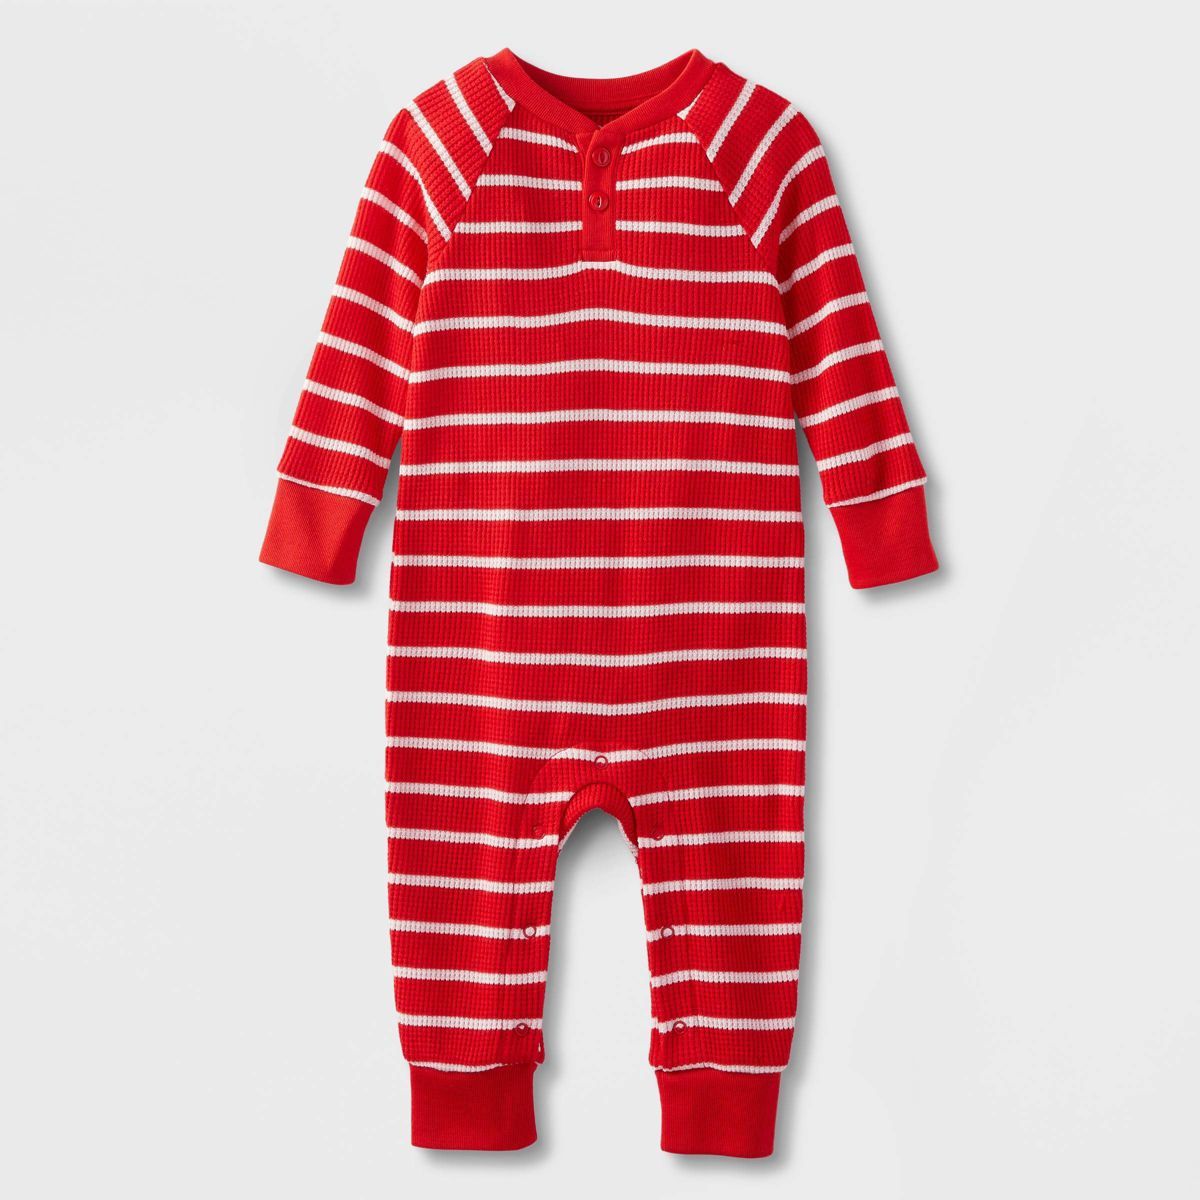 Baby Striped Matching Family Footed Pajama Set - Wondershop™ Red | Target